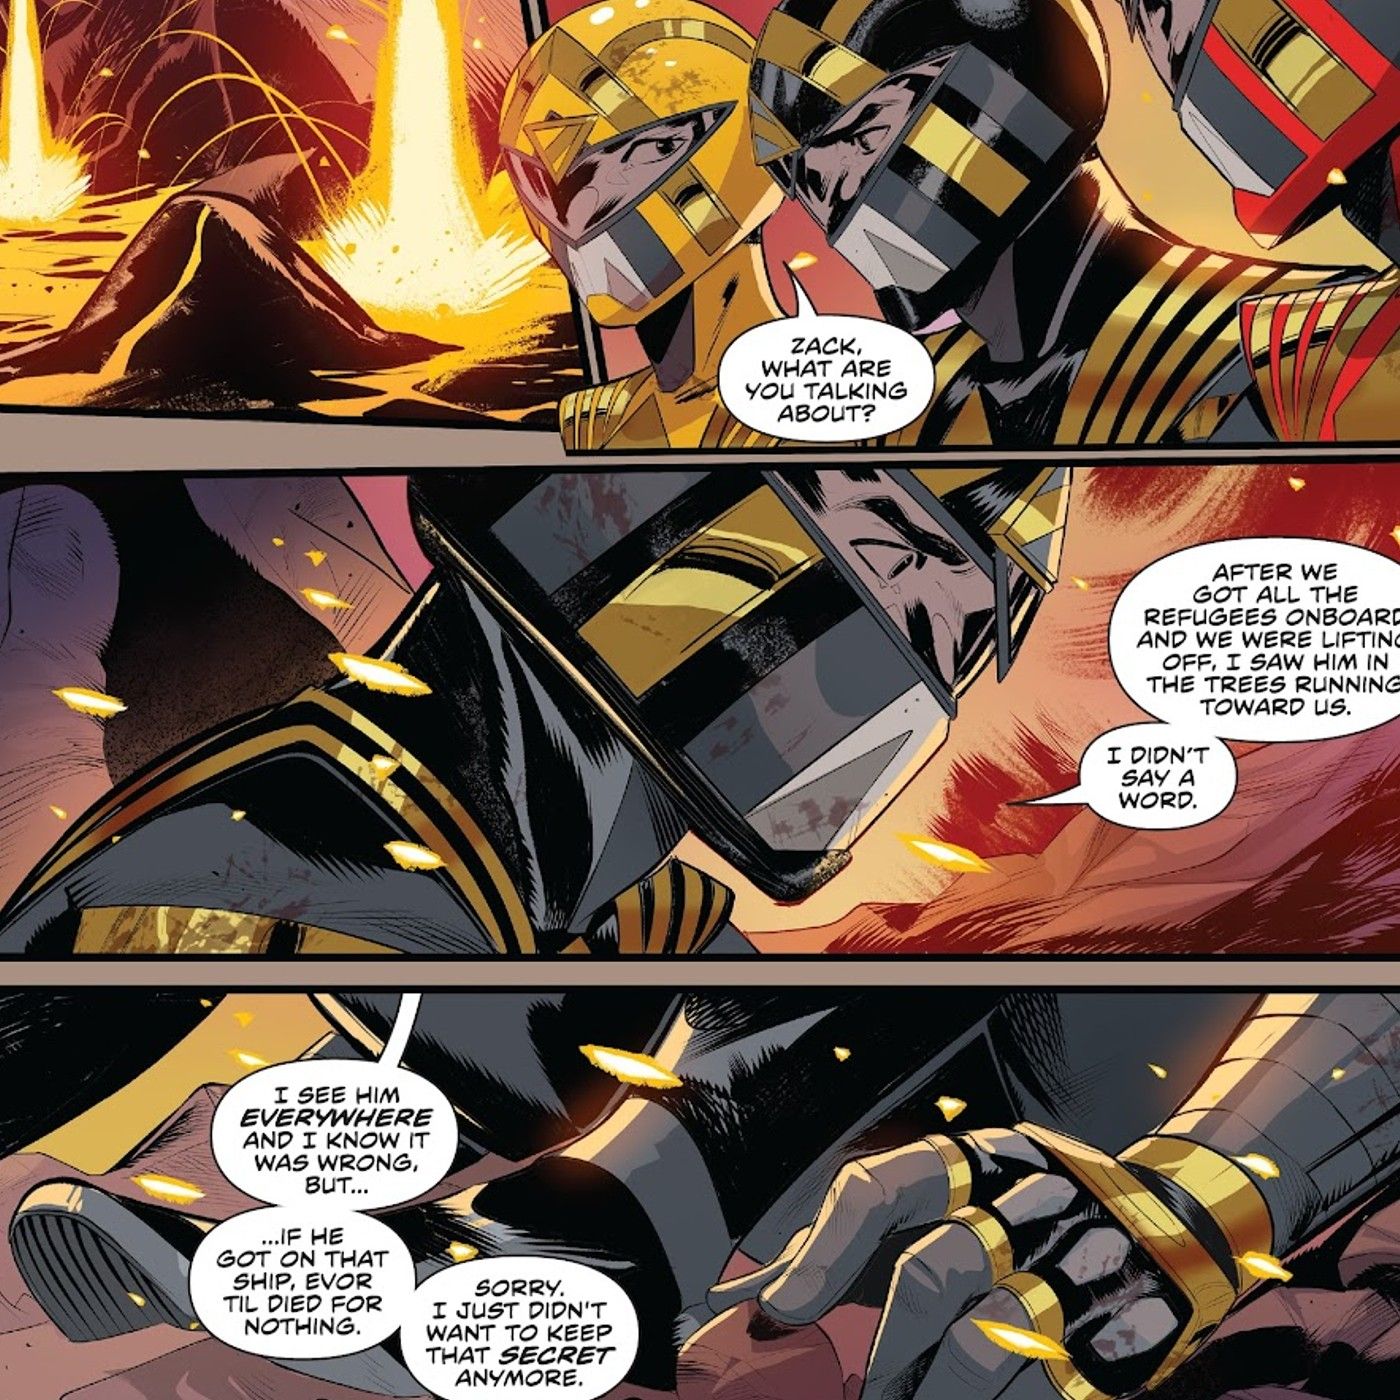 Power Rangers #12, eski Mighty Morphin Power Rangers Black Ranger Zack Taylor, Omega Rangers'a sırrını anlatıyor